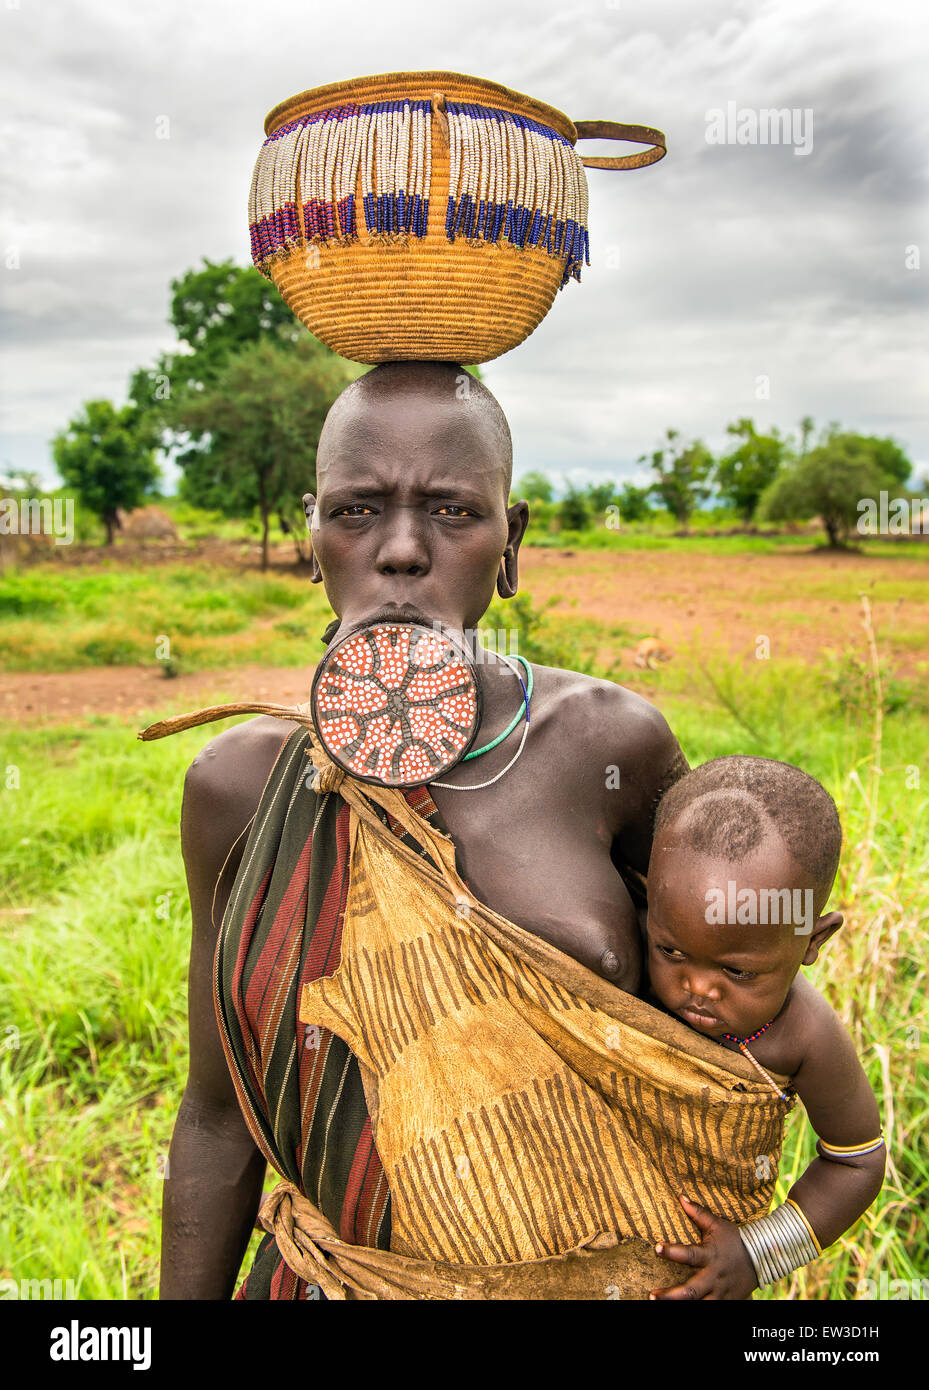 mujer-de-la-tribu-mursi-africano-con-gran-placa-labial-que-llevaba-a-su-bebe-ew3d1h.jpg